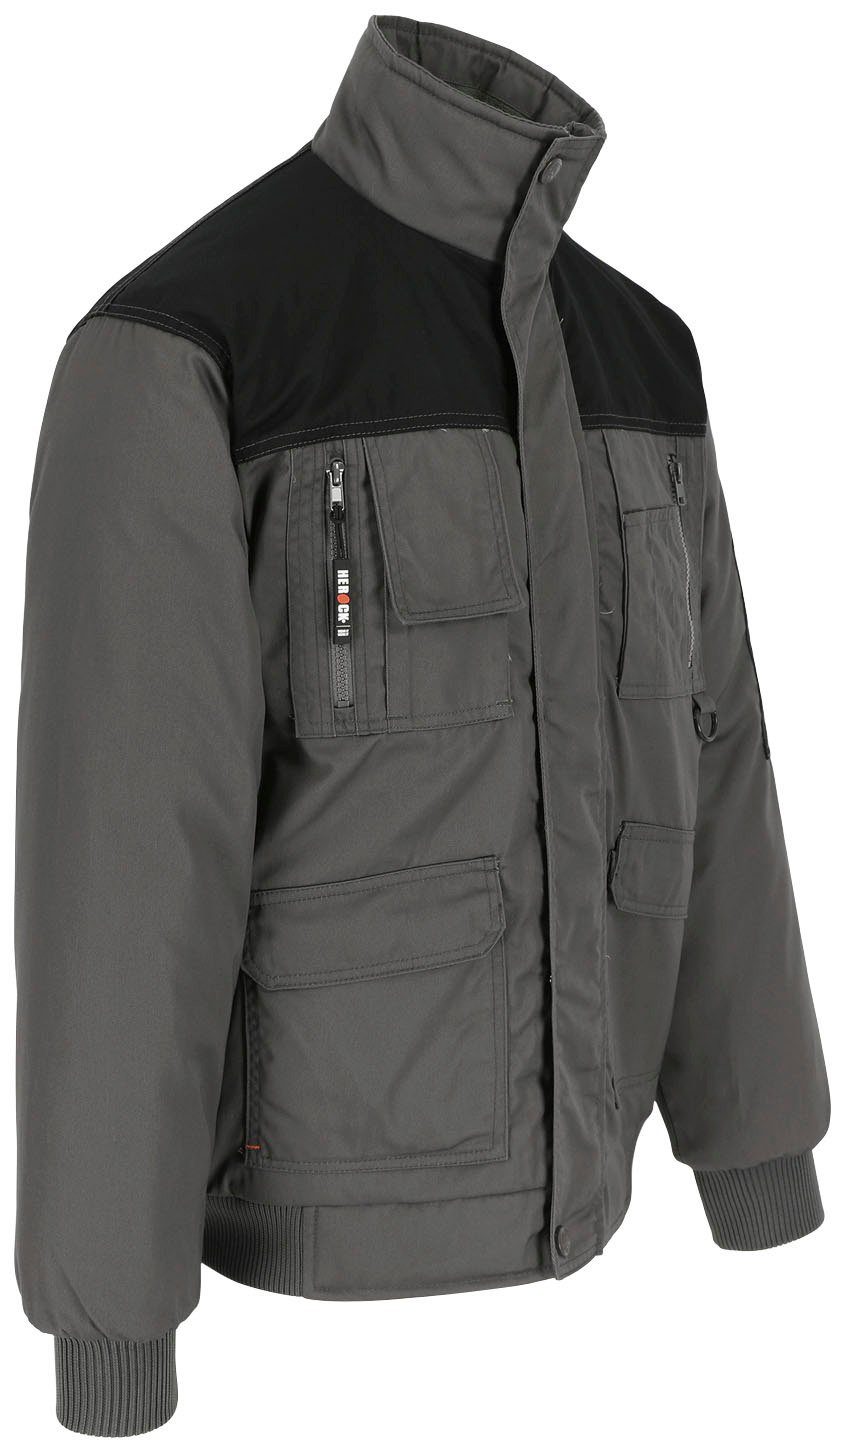 grau Fleece-Kragen, Herock viele Jacke mit Typhon viele Taschen, robust, Wasserabweisend Arbeitsjacke Farben